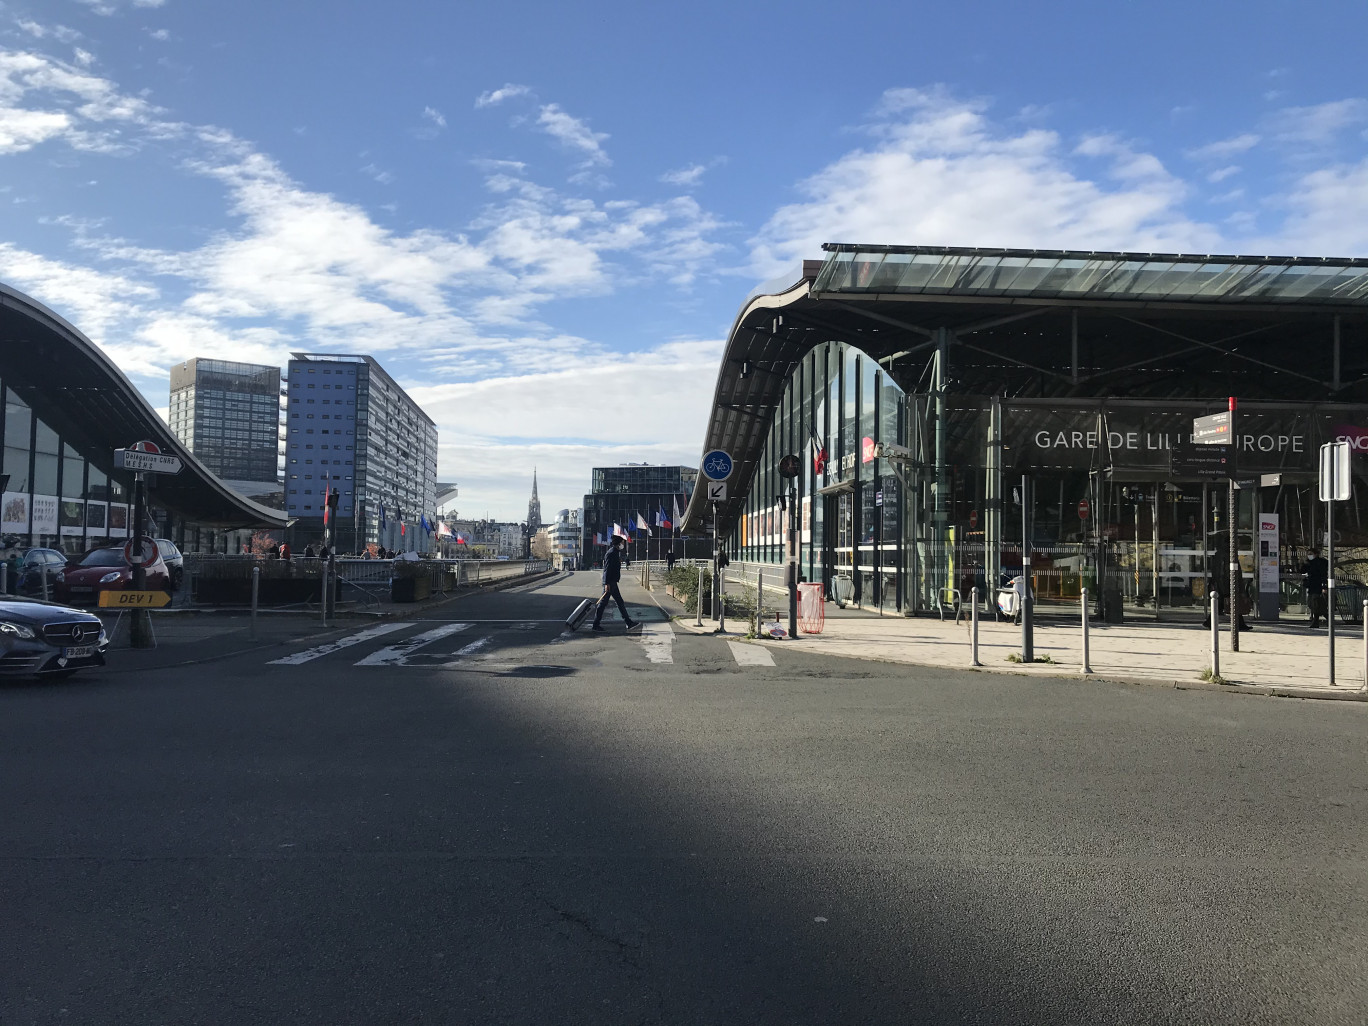 Devant la gare de Lille Europe, déserte, le 9 novembre.  (c) Olivier Razemon pour DSI